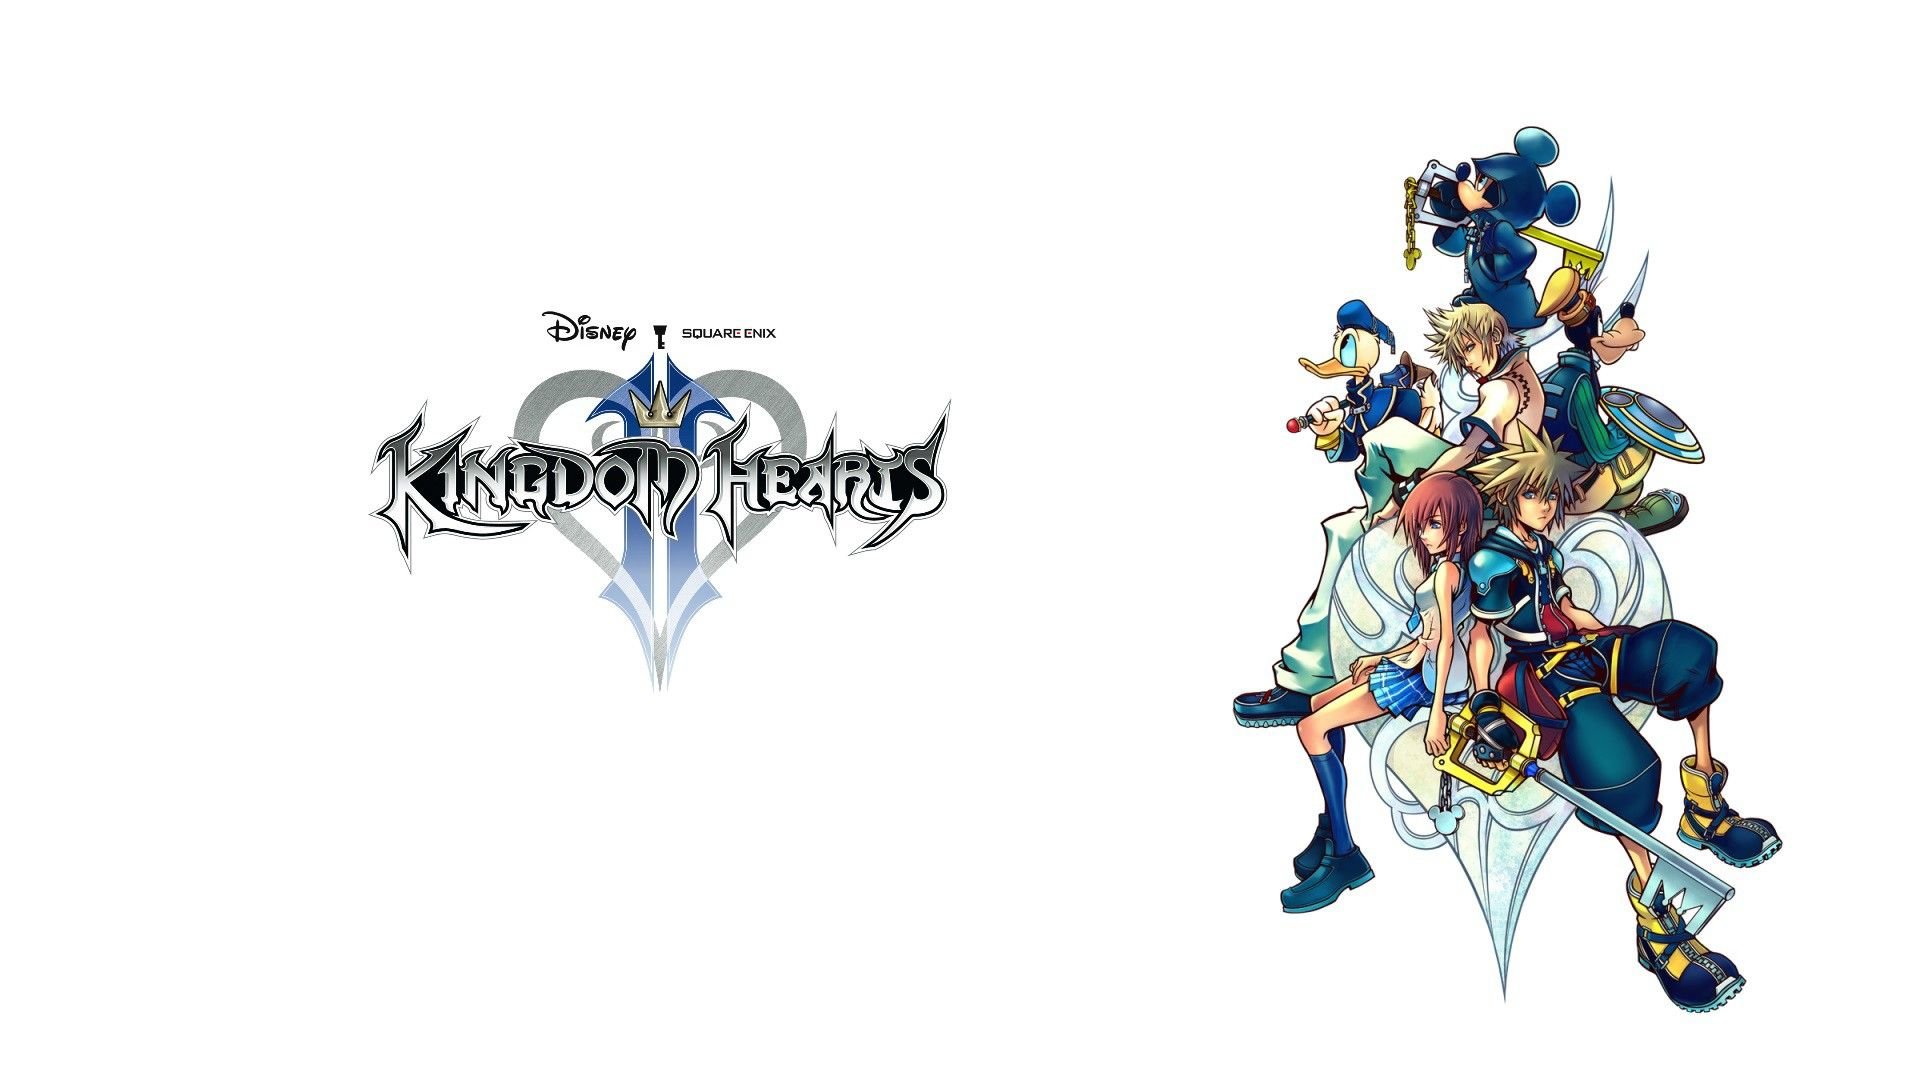 60 Kingdom Hearts 2 Wallpapers   Download at WallpaperBro